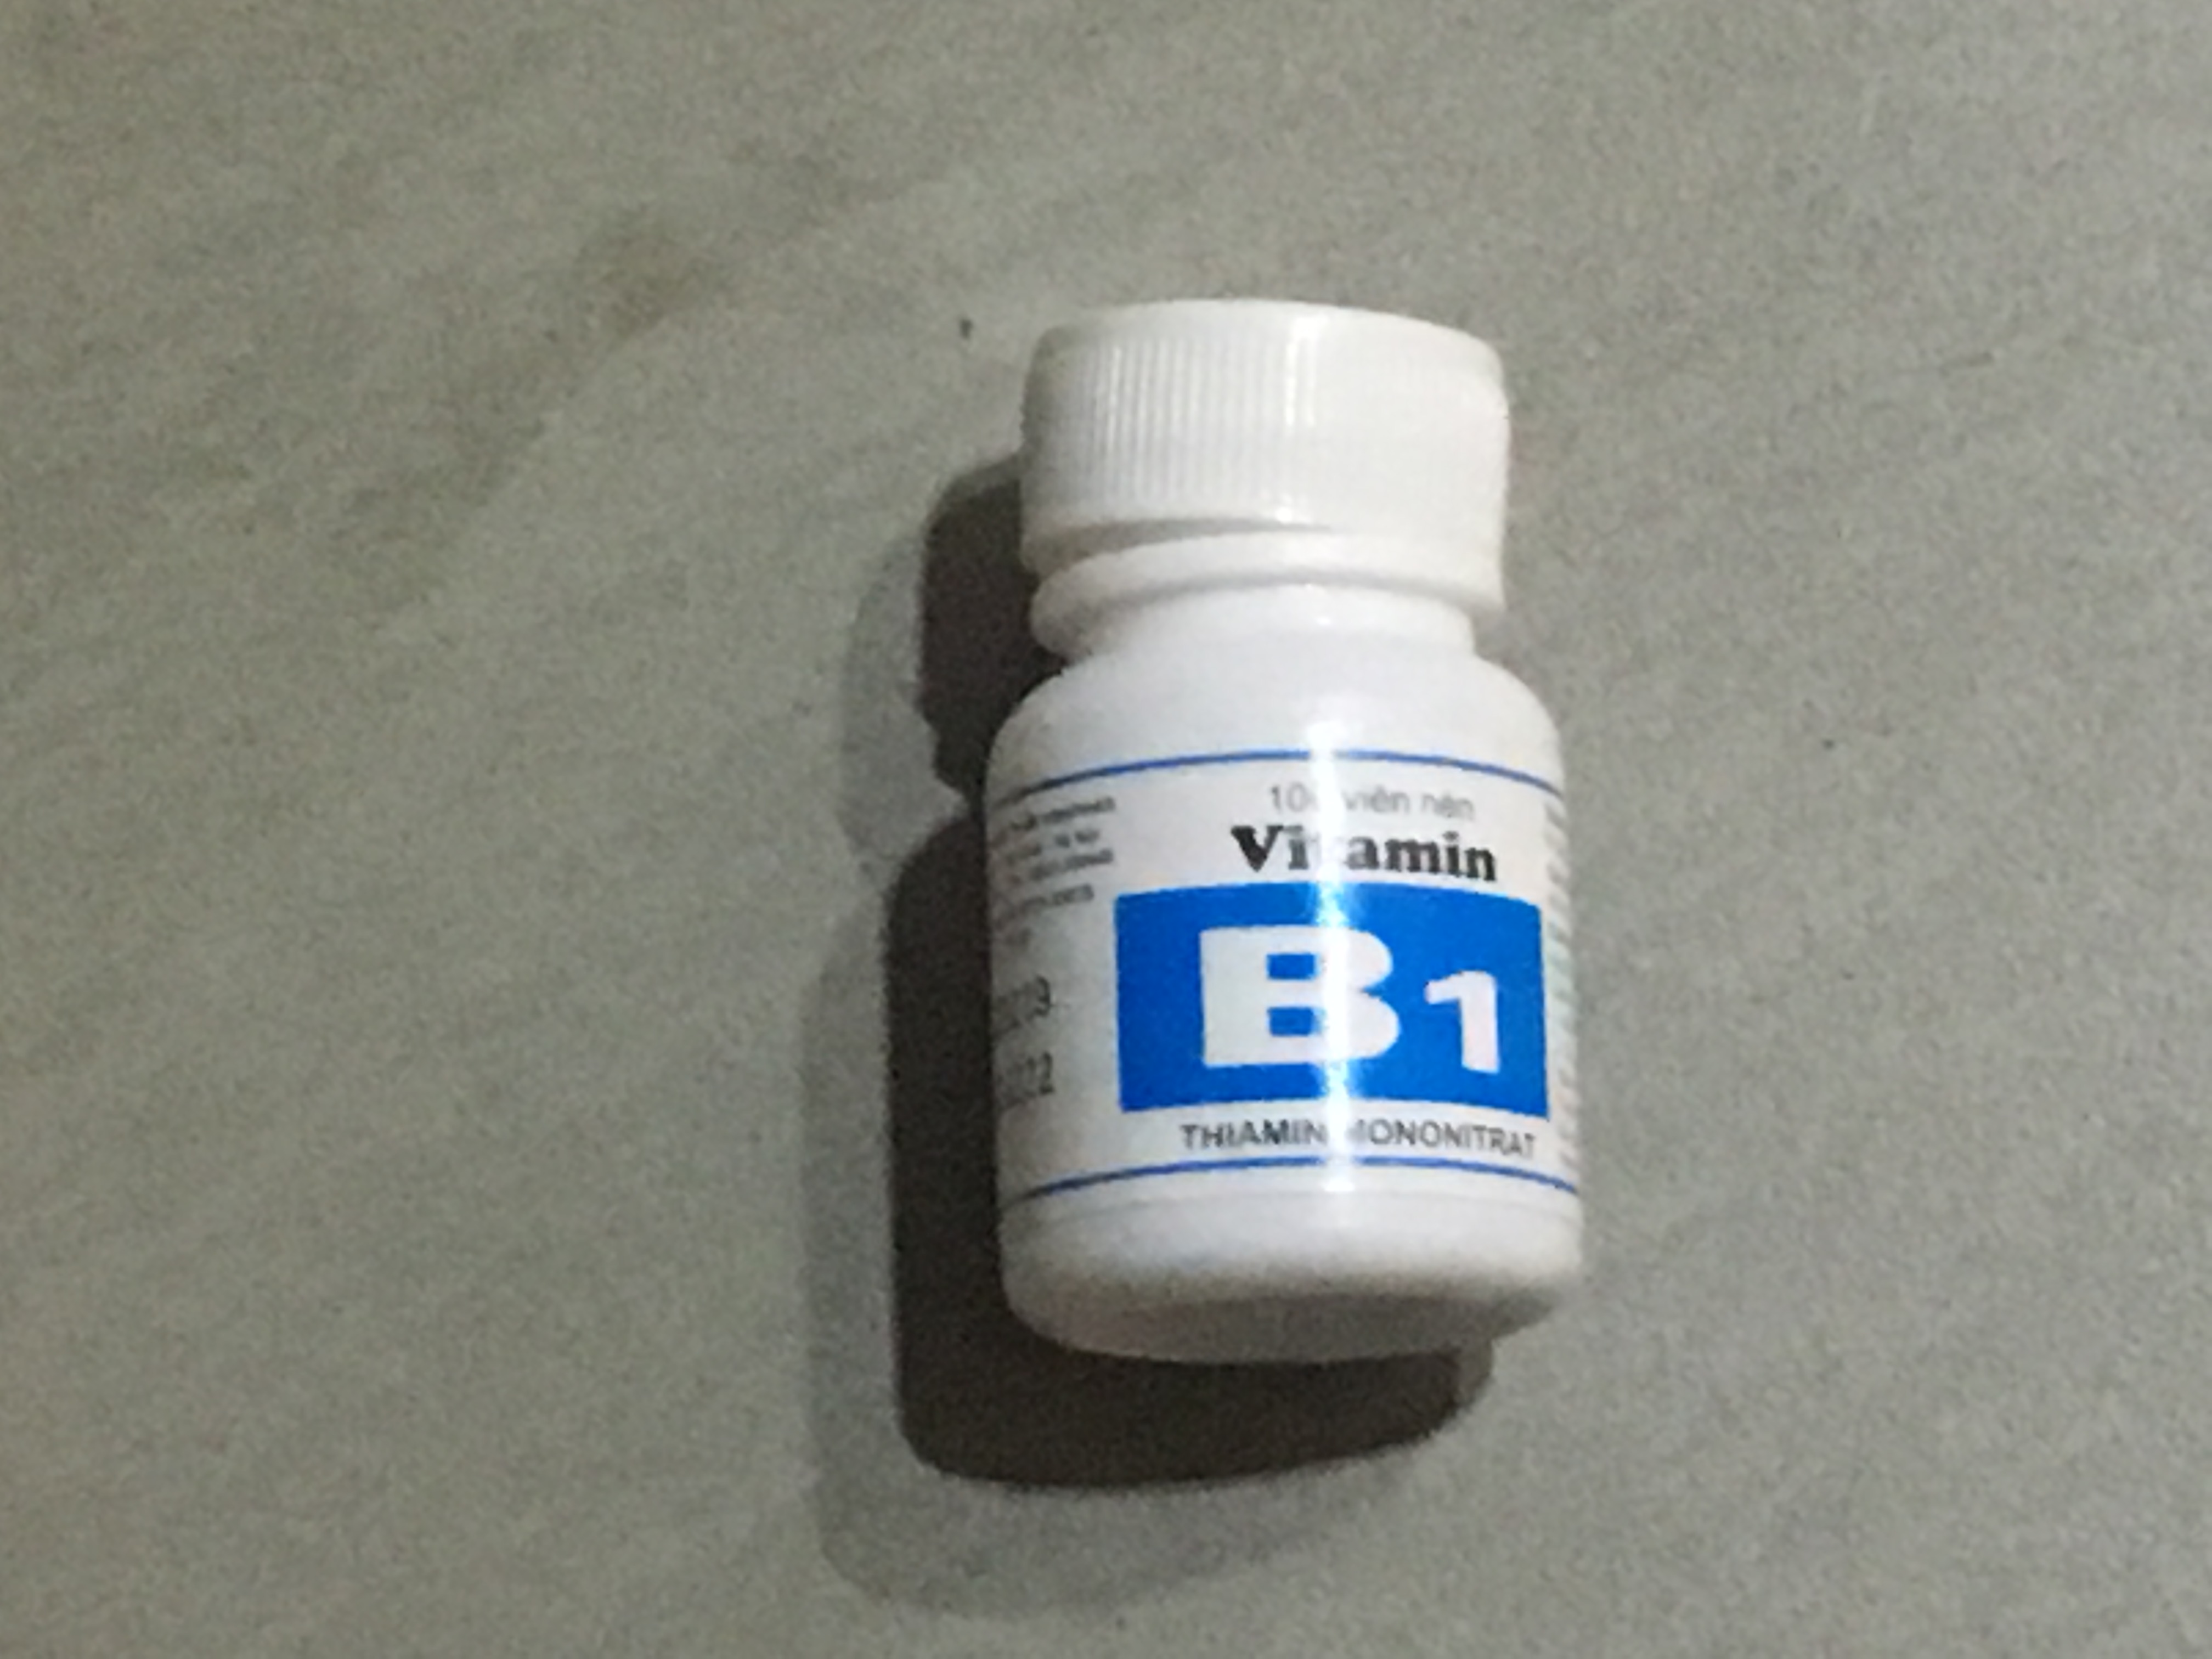 Tại sao cần bổ sung vitamin B1 cho cơ thể?
